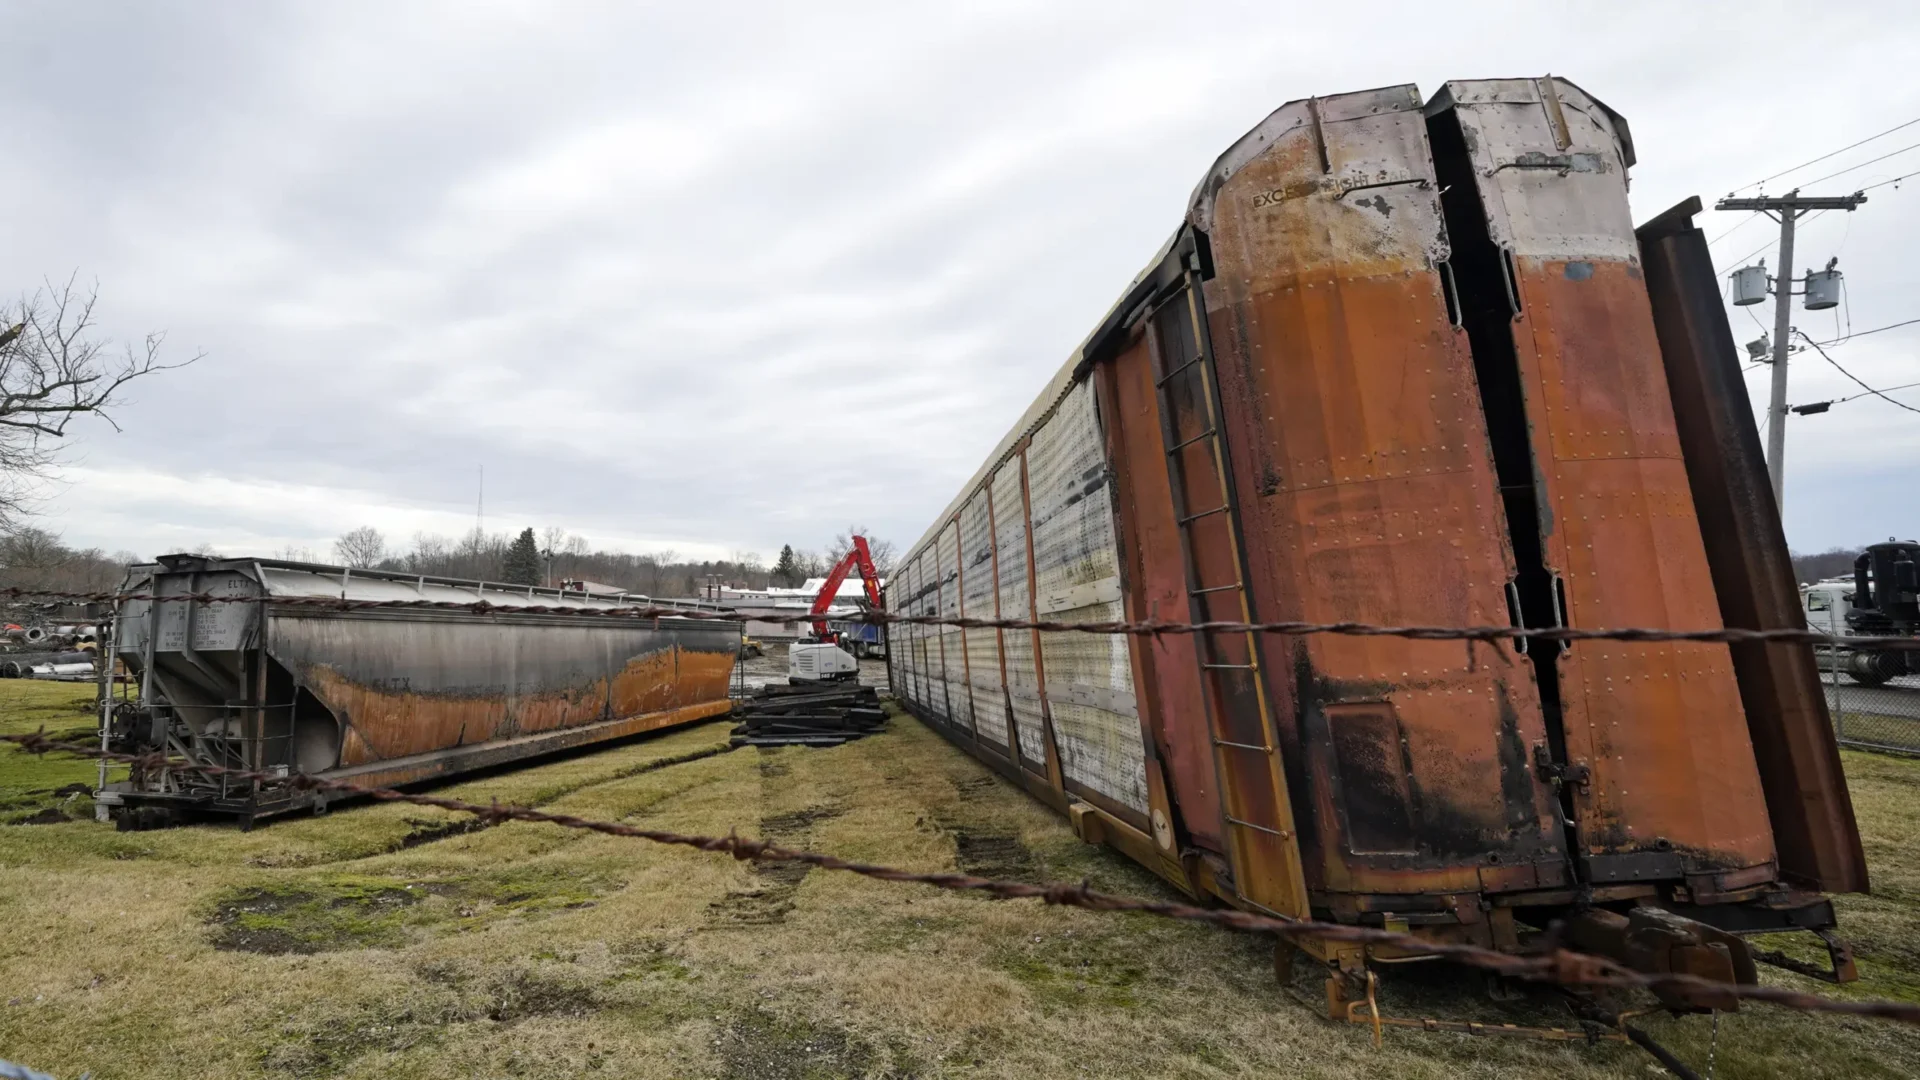 Residentes molestos de la ciudad de Ohio buscan respuestas sobre el descarrilamiento del tren